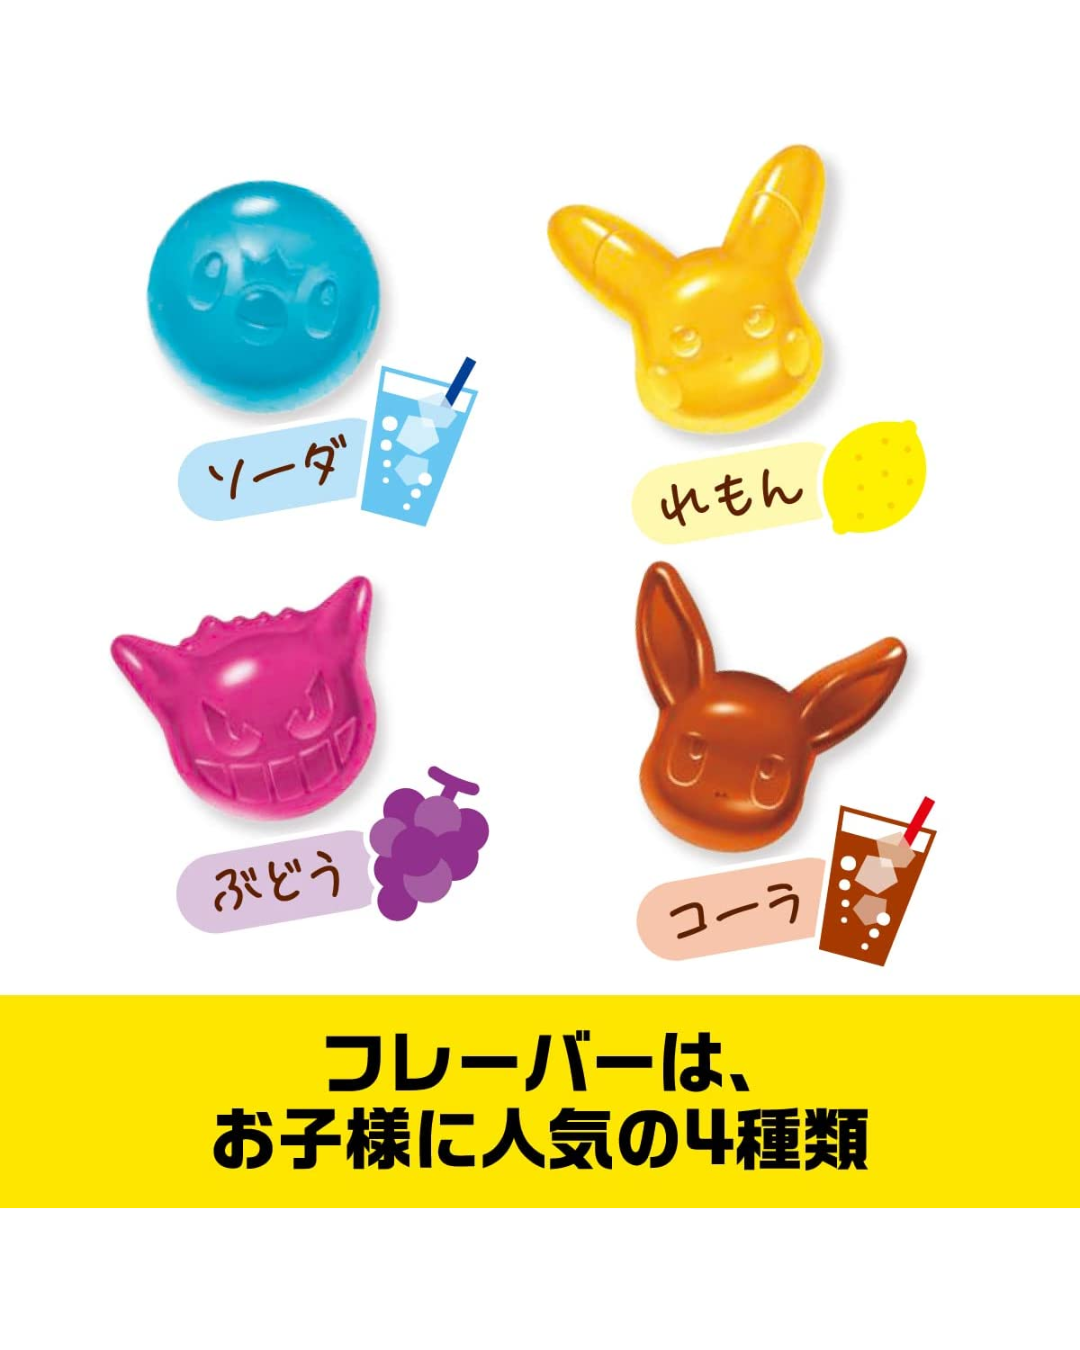 Lotte Pokémon Gummy